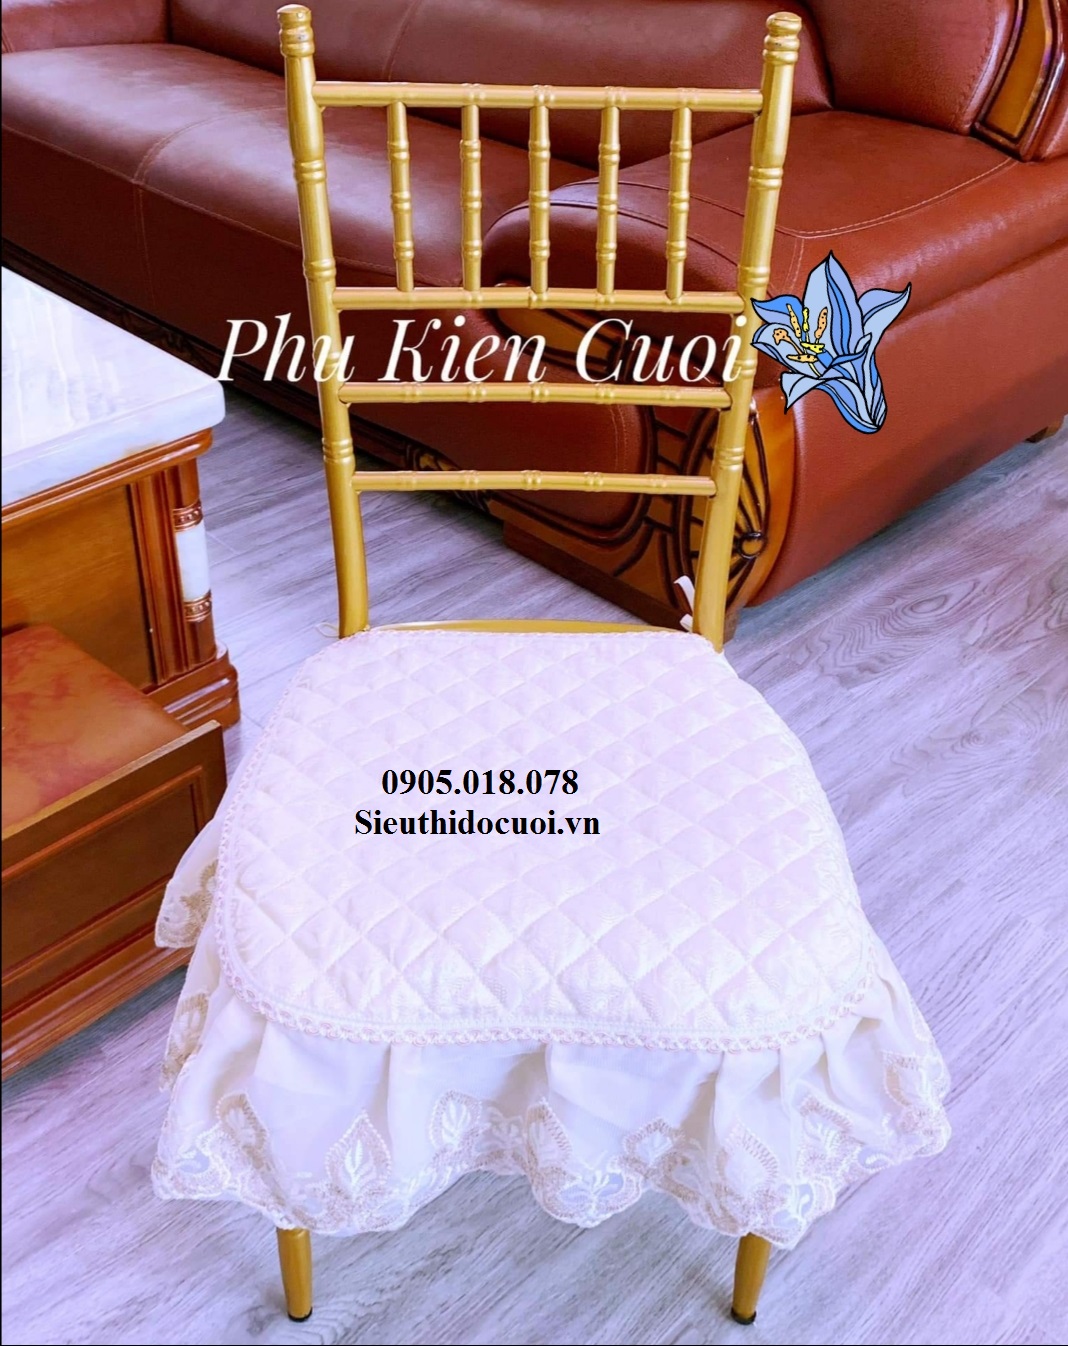 Miếng lót ghế, phủ ghế, trang trí ghế Tiffany Sty Hoàng Gia